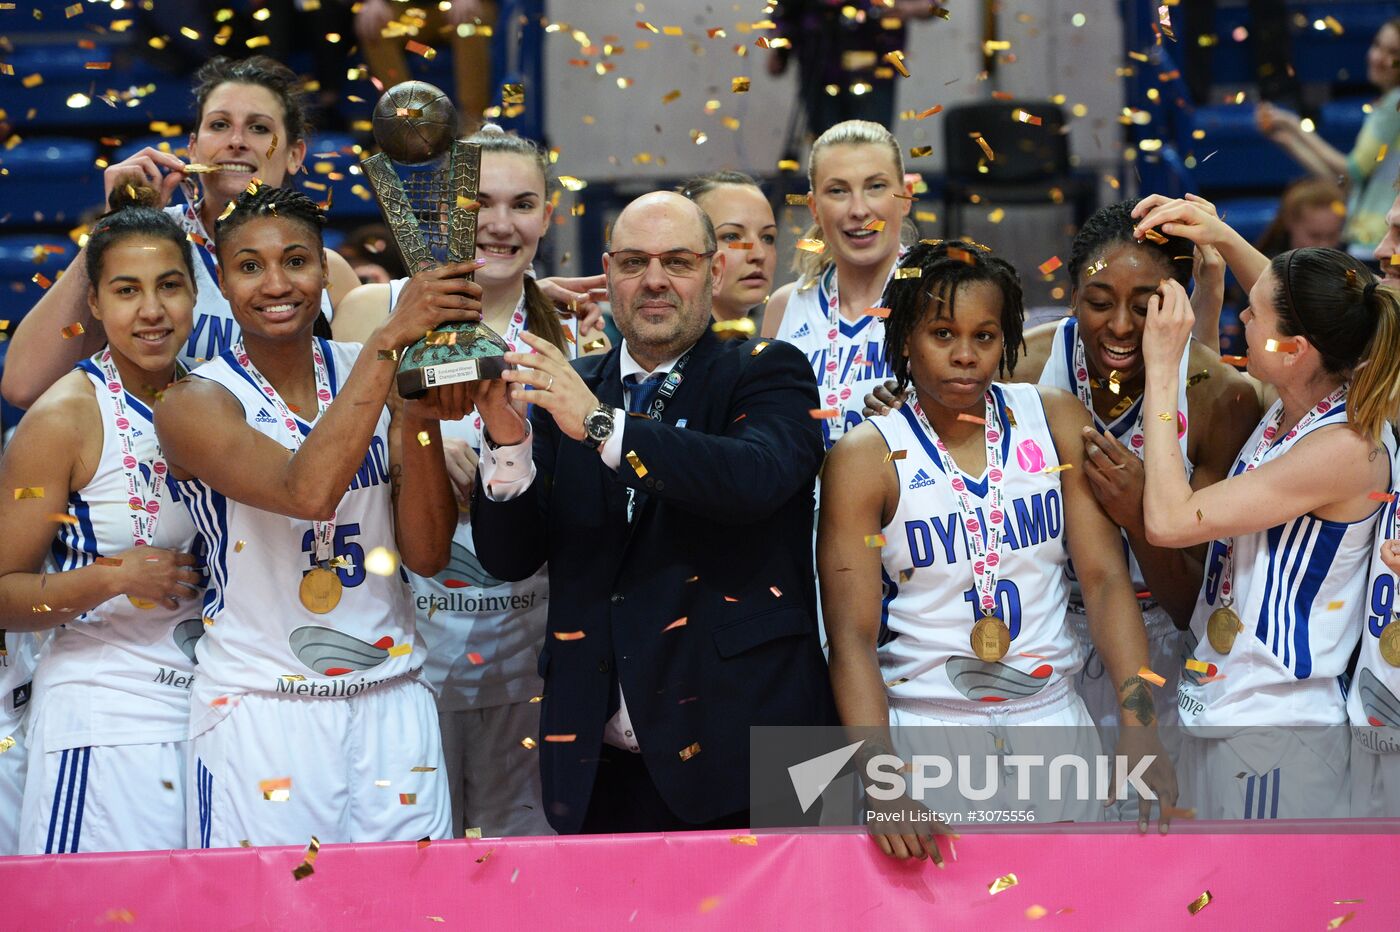 Women's Euroleague Basketball Final Four. Final match